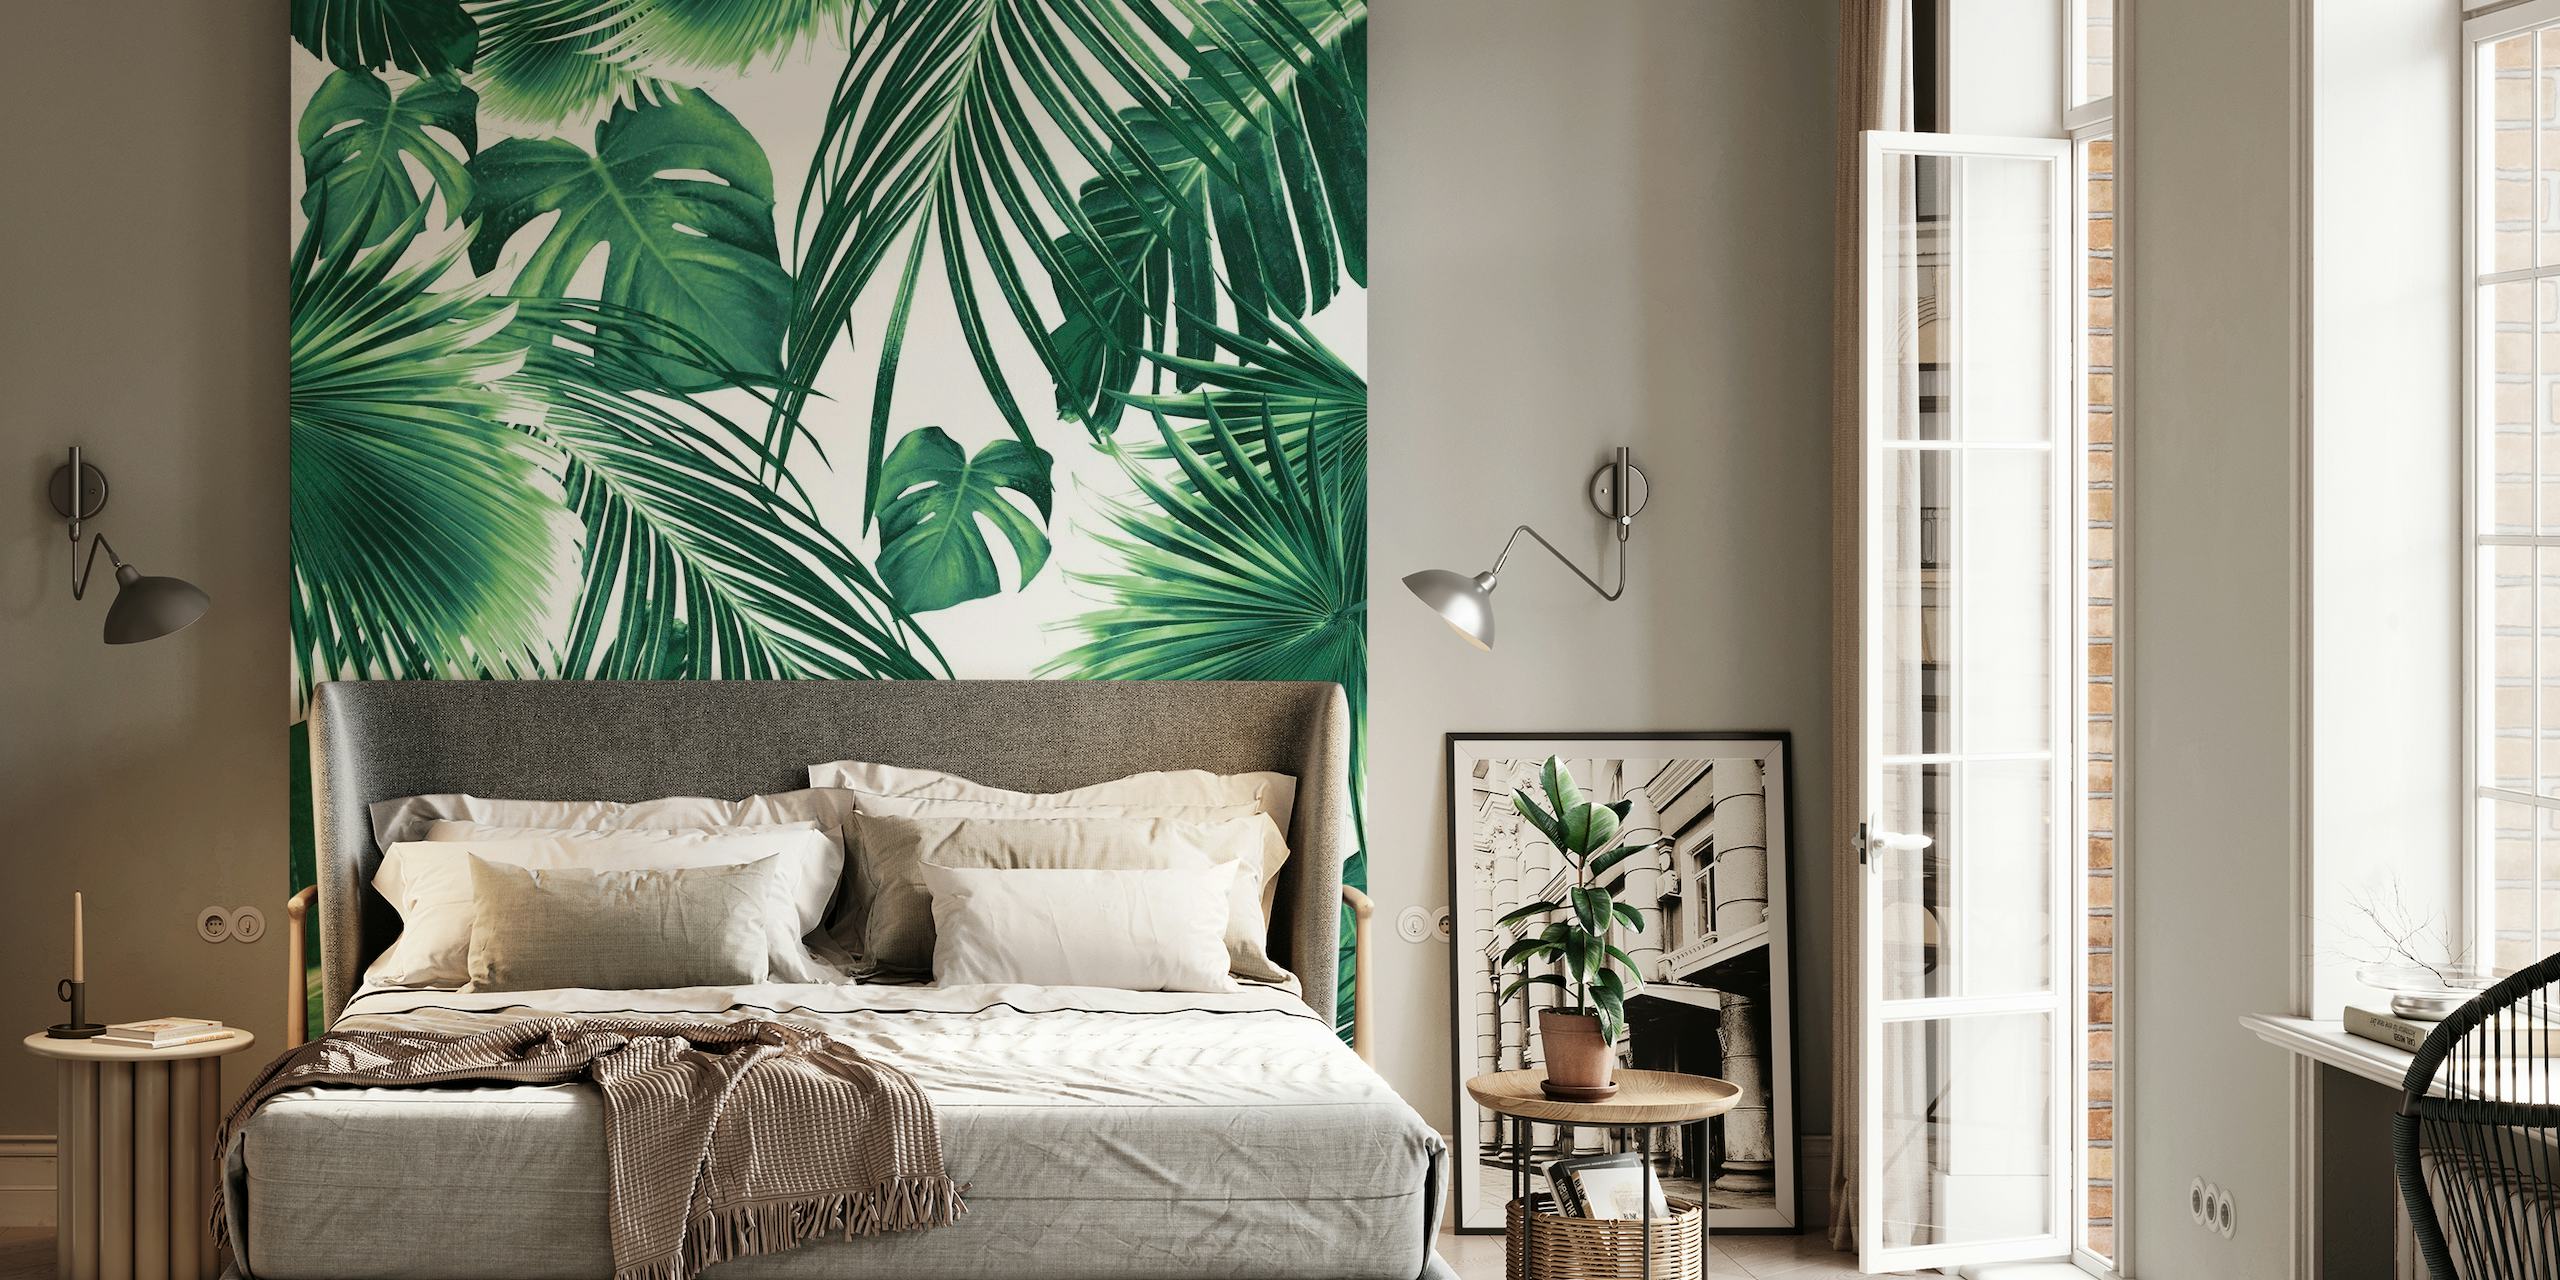 Et frodigt vægmaleri med et tæt mønster af tropiske jungleblade i grønne nuancer